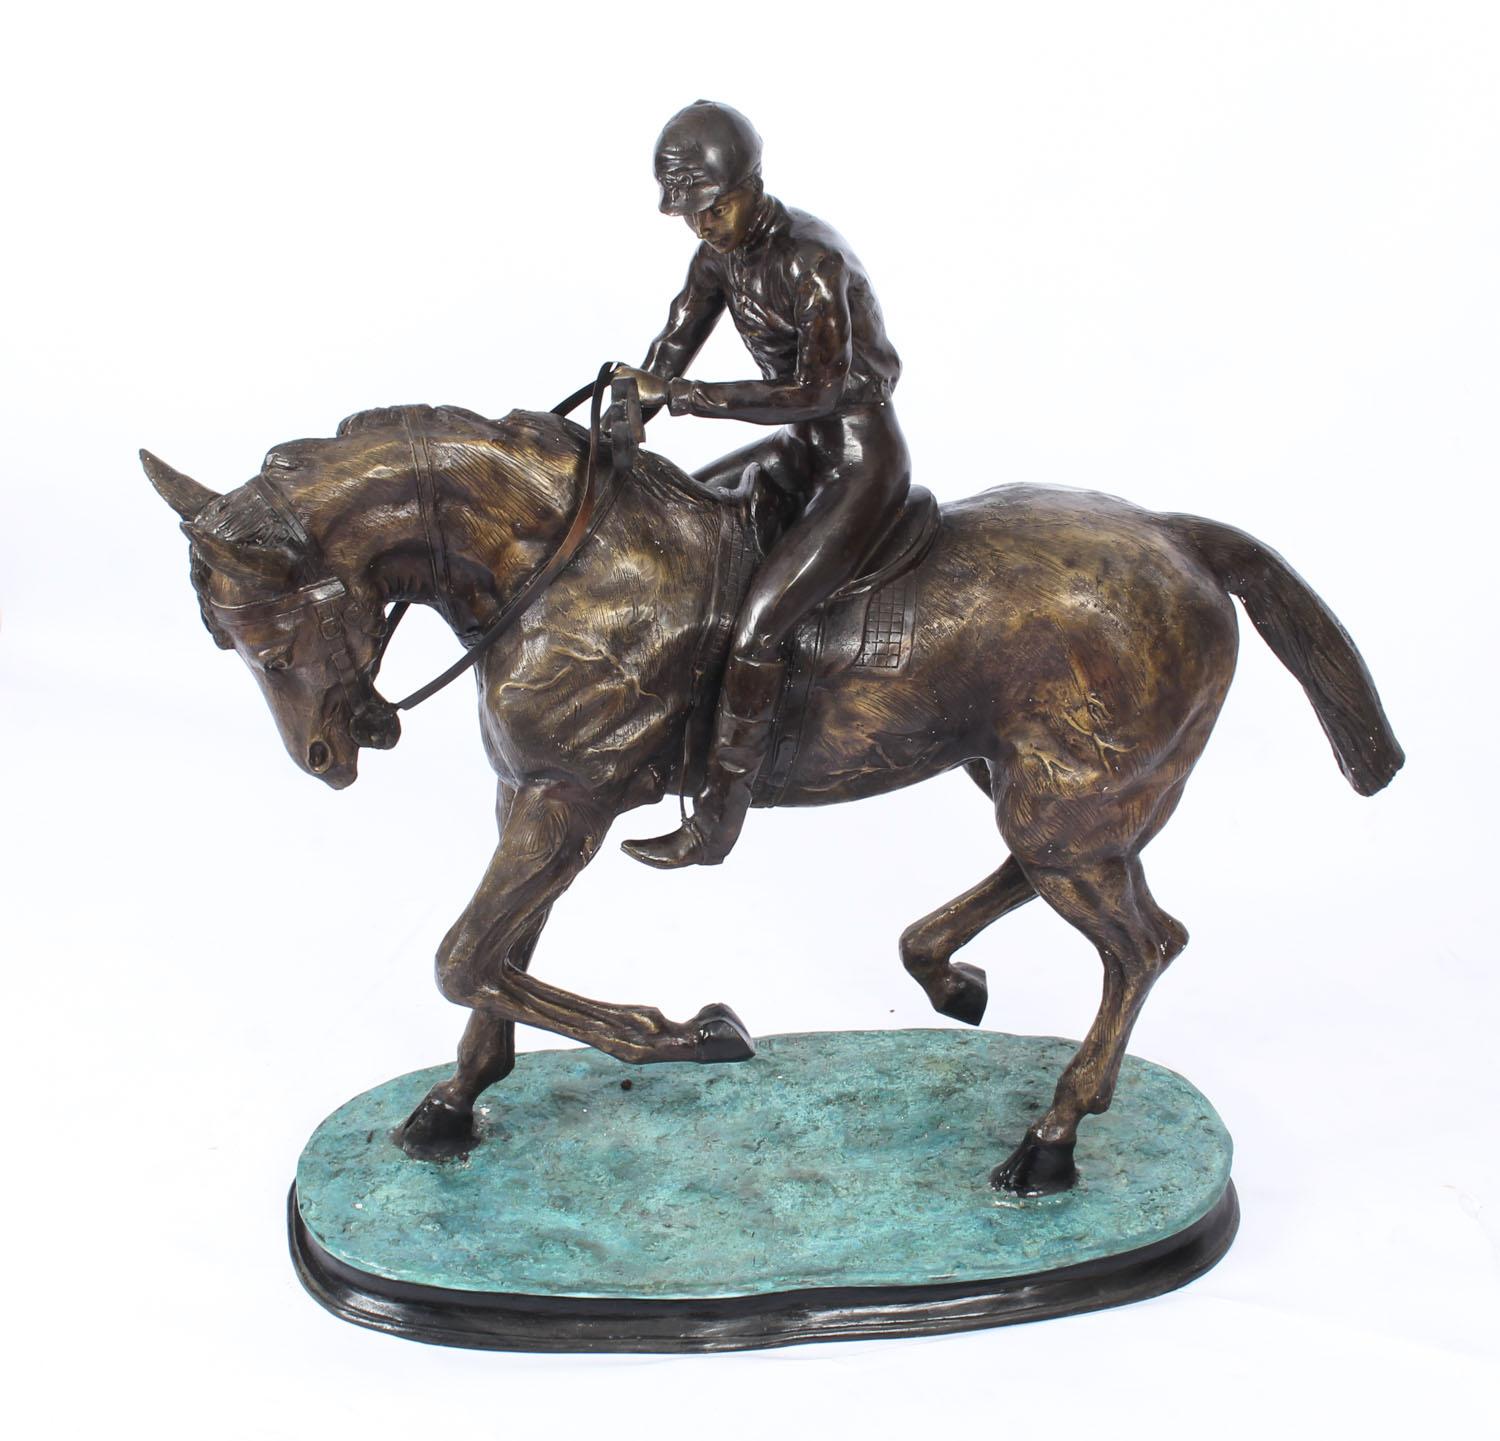 Dies ist eine beeindruckende große Bronzeskulptur eines Pferdes und eines Jockeys nach Pierre Jules Mene' aus der zweiten Hälfte des 20. Jahrhunderts.

Die atemberaubende Skulptur hat eine detaillierte Definition, zeigt das Pferd und den Jockey in